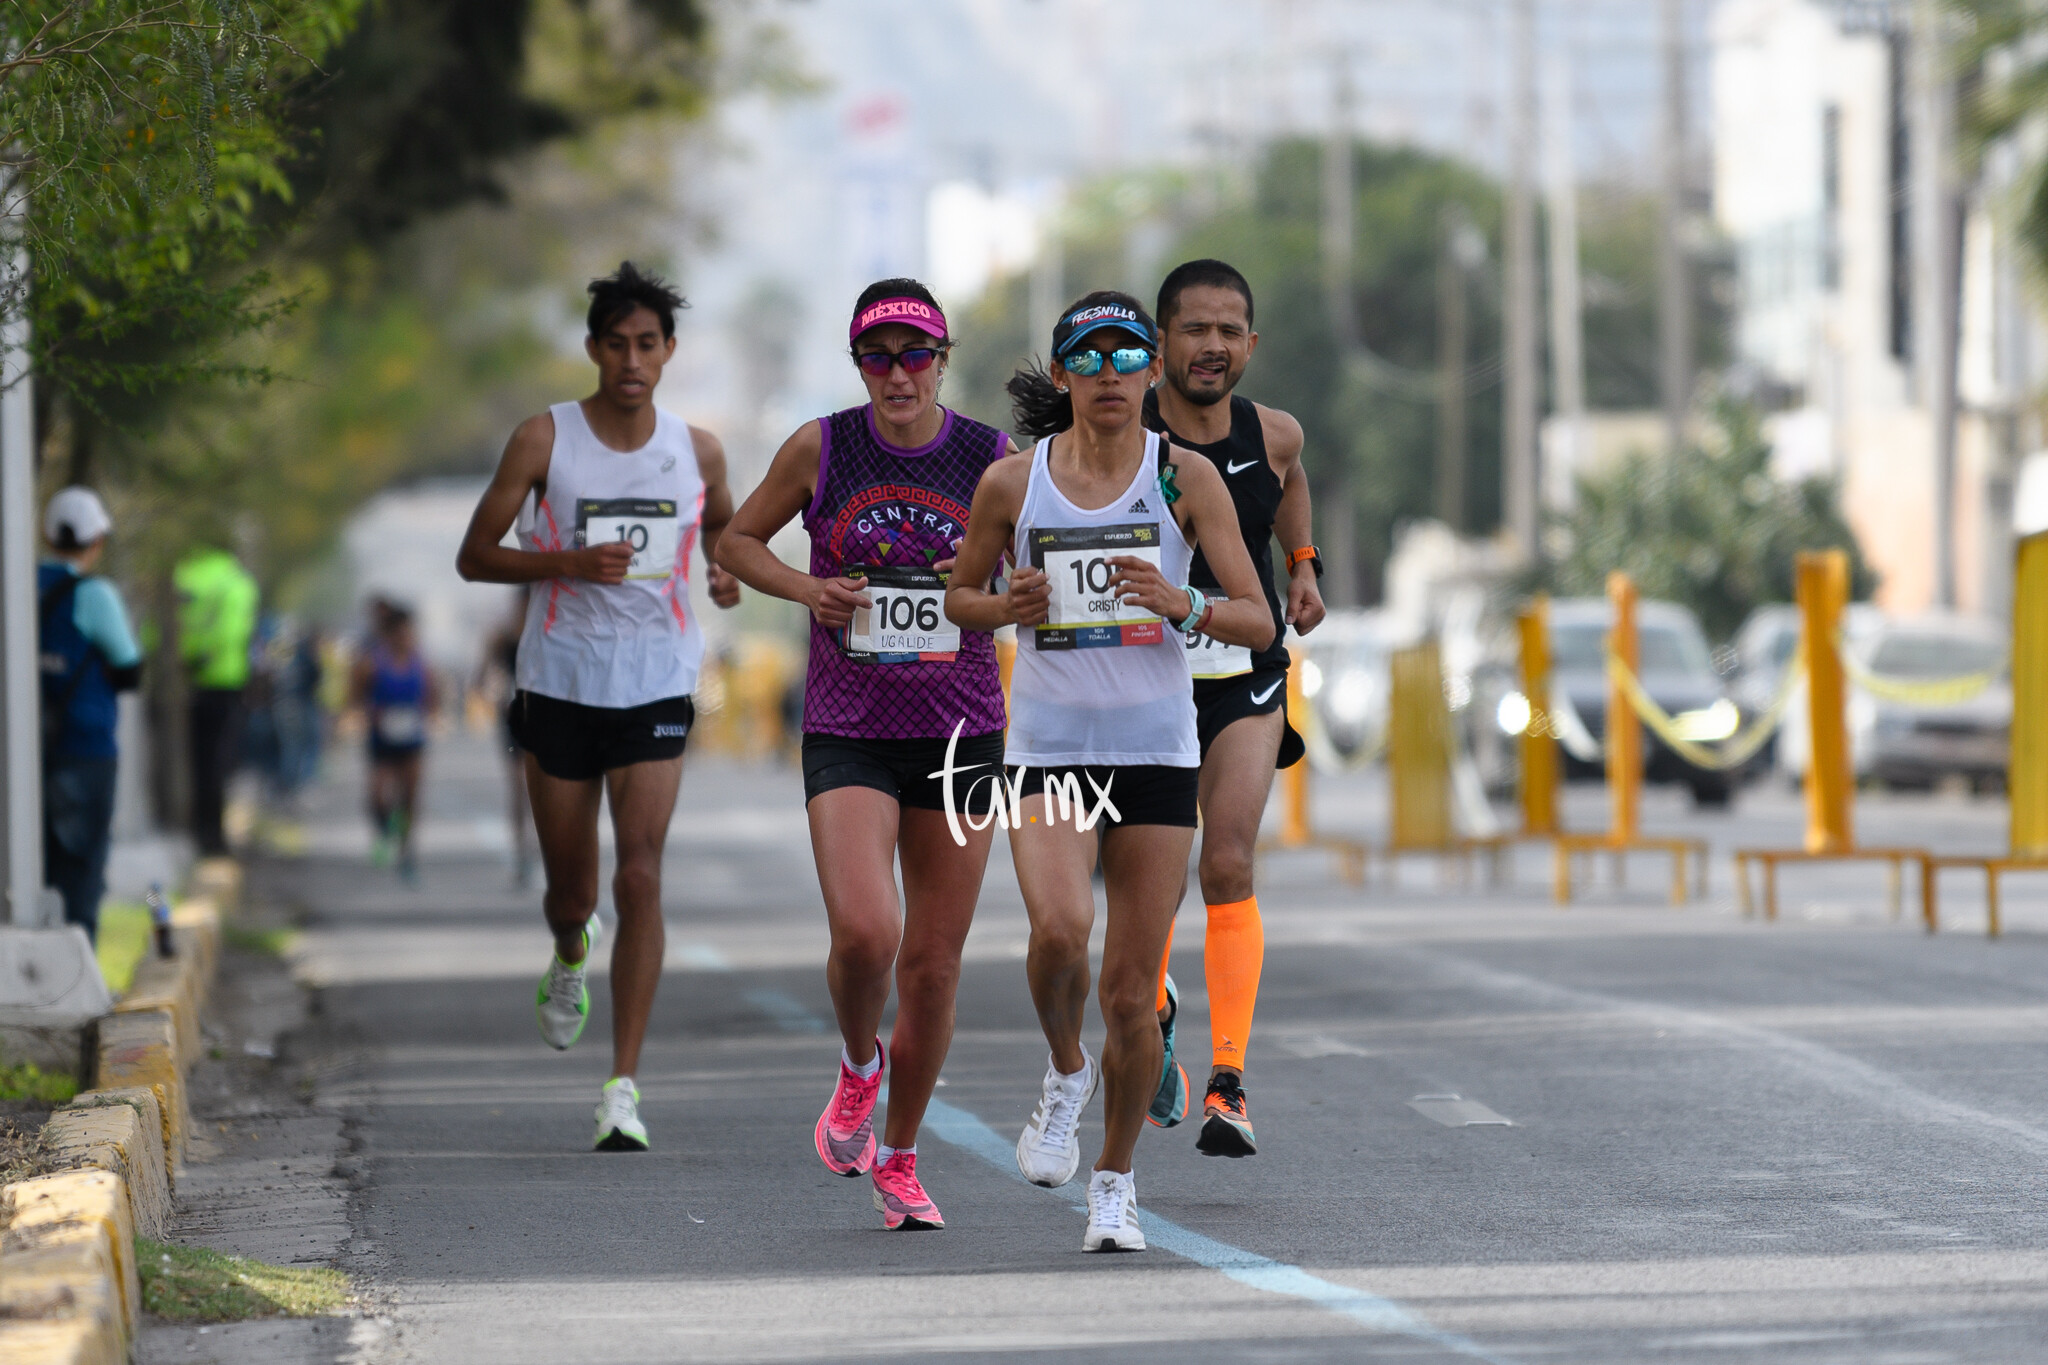 Fotos del Maratón Lala 2020, Bosque Venustiano Carranza